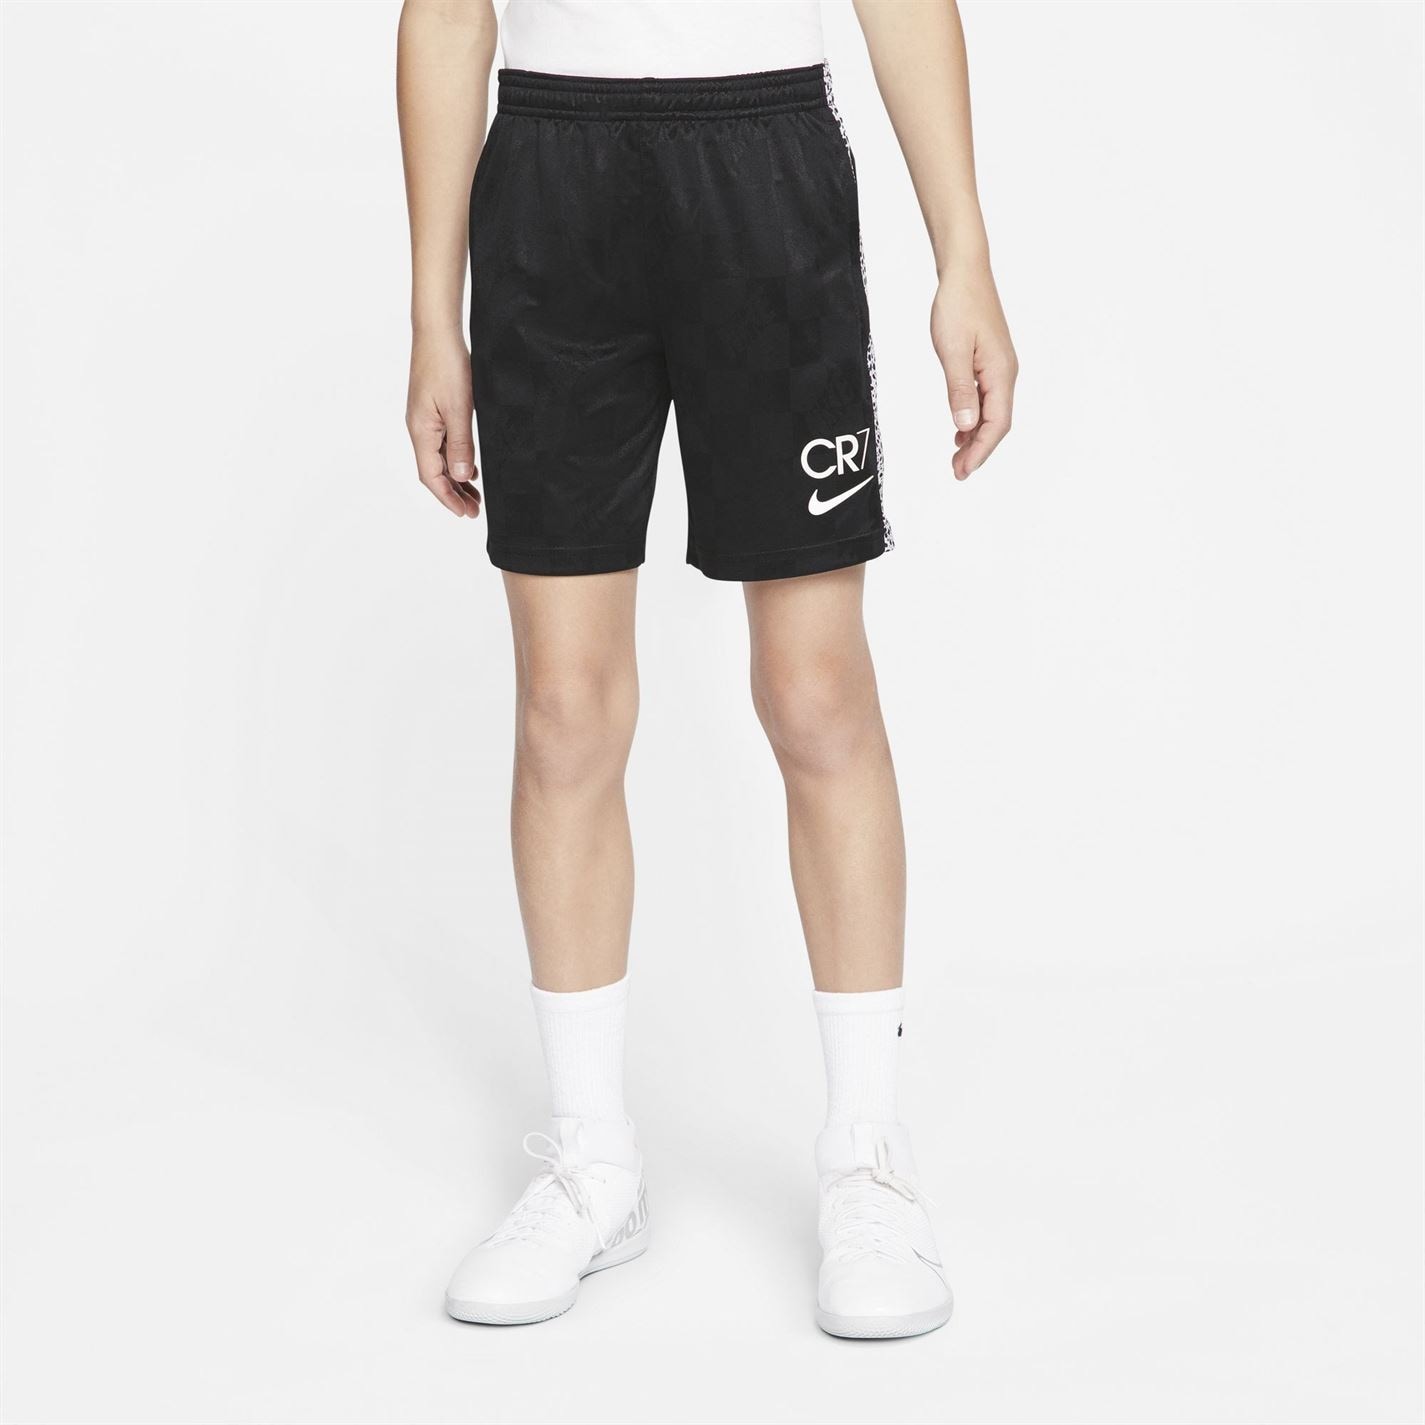 Pantaloni scurti Nike DF CR7 Juniors de baieti